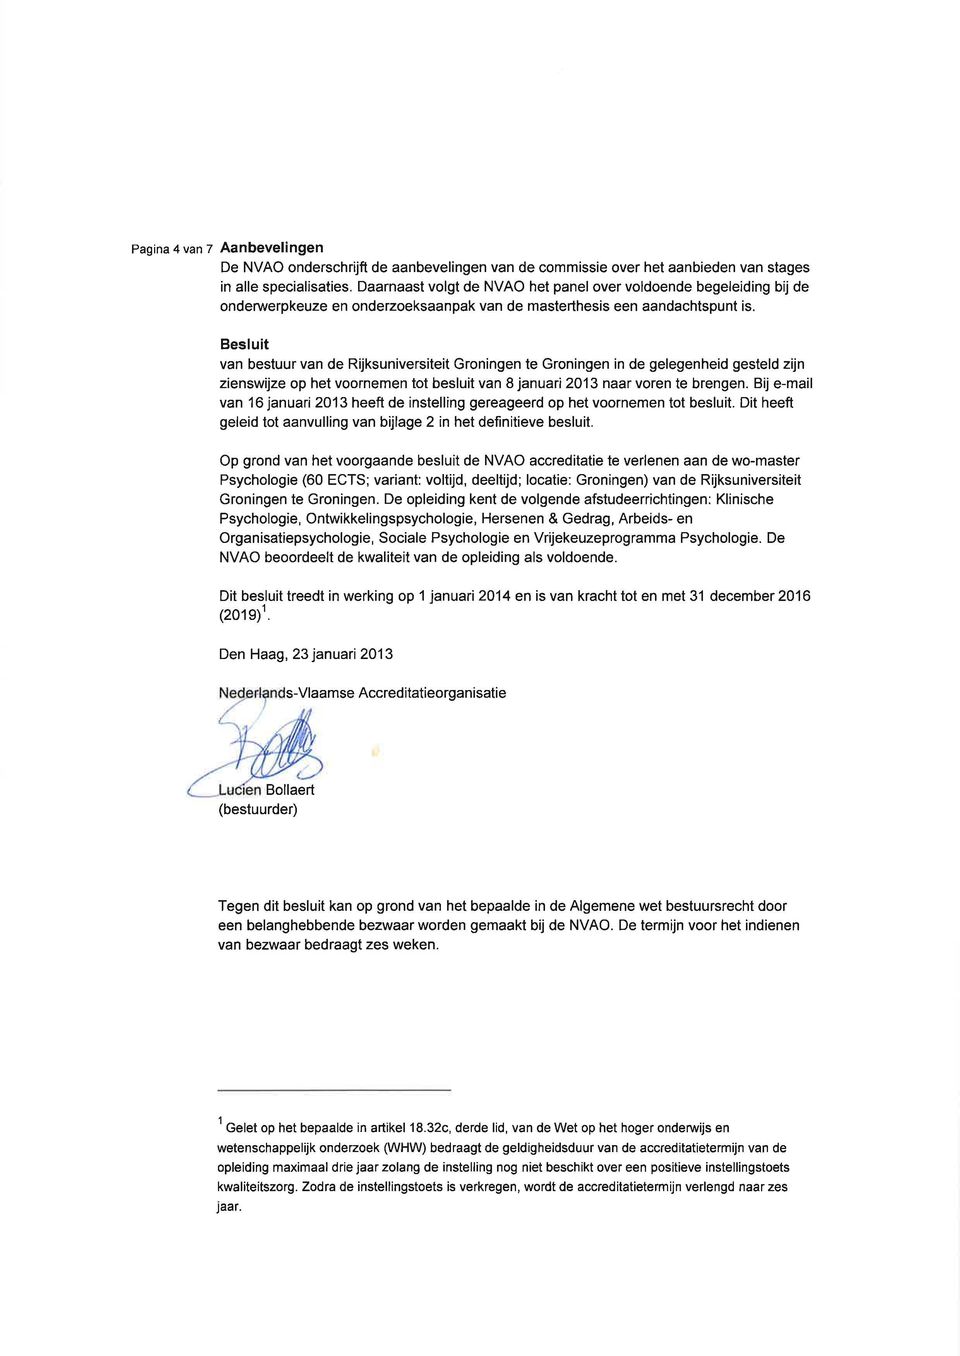 Besluit van bestuur van de Rijksuniversiteit Groningen te Groningen in de gelegenheid gesteld zijn zienswijze op het voornemen tot besluit van 8 januari 2013 naar voren te brengen.